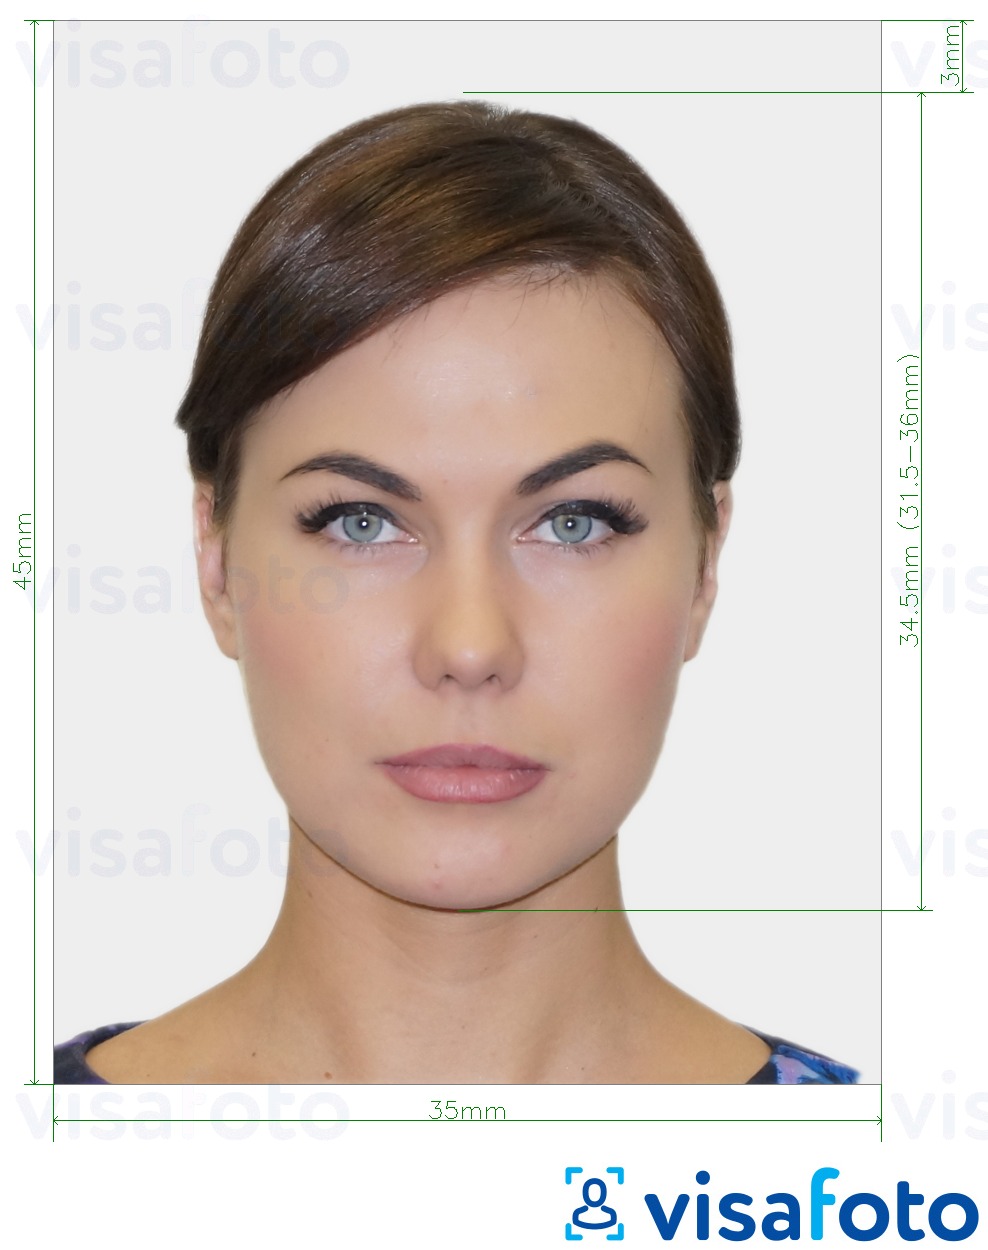 Exemple de foto per a Visa de Xipre 35x45 mm (3.5x4.5 cm) amb la mida exacta especificada